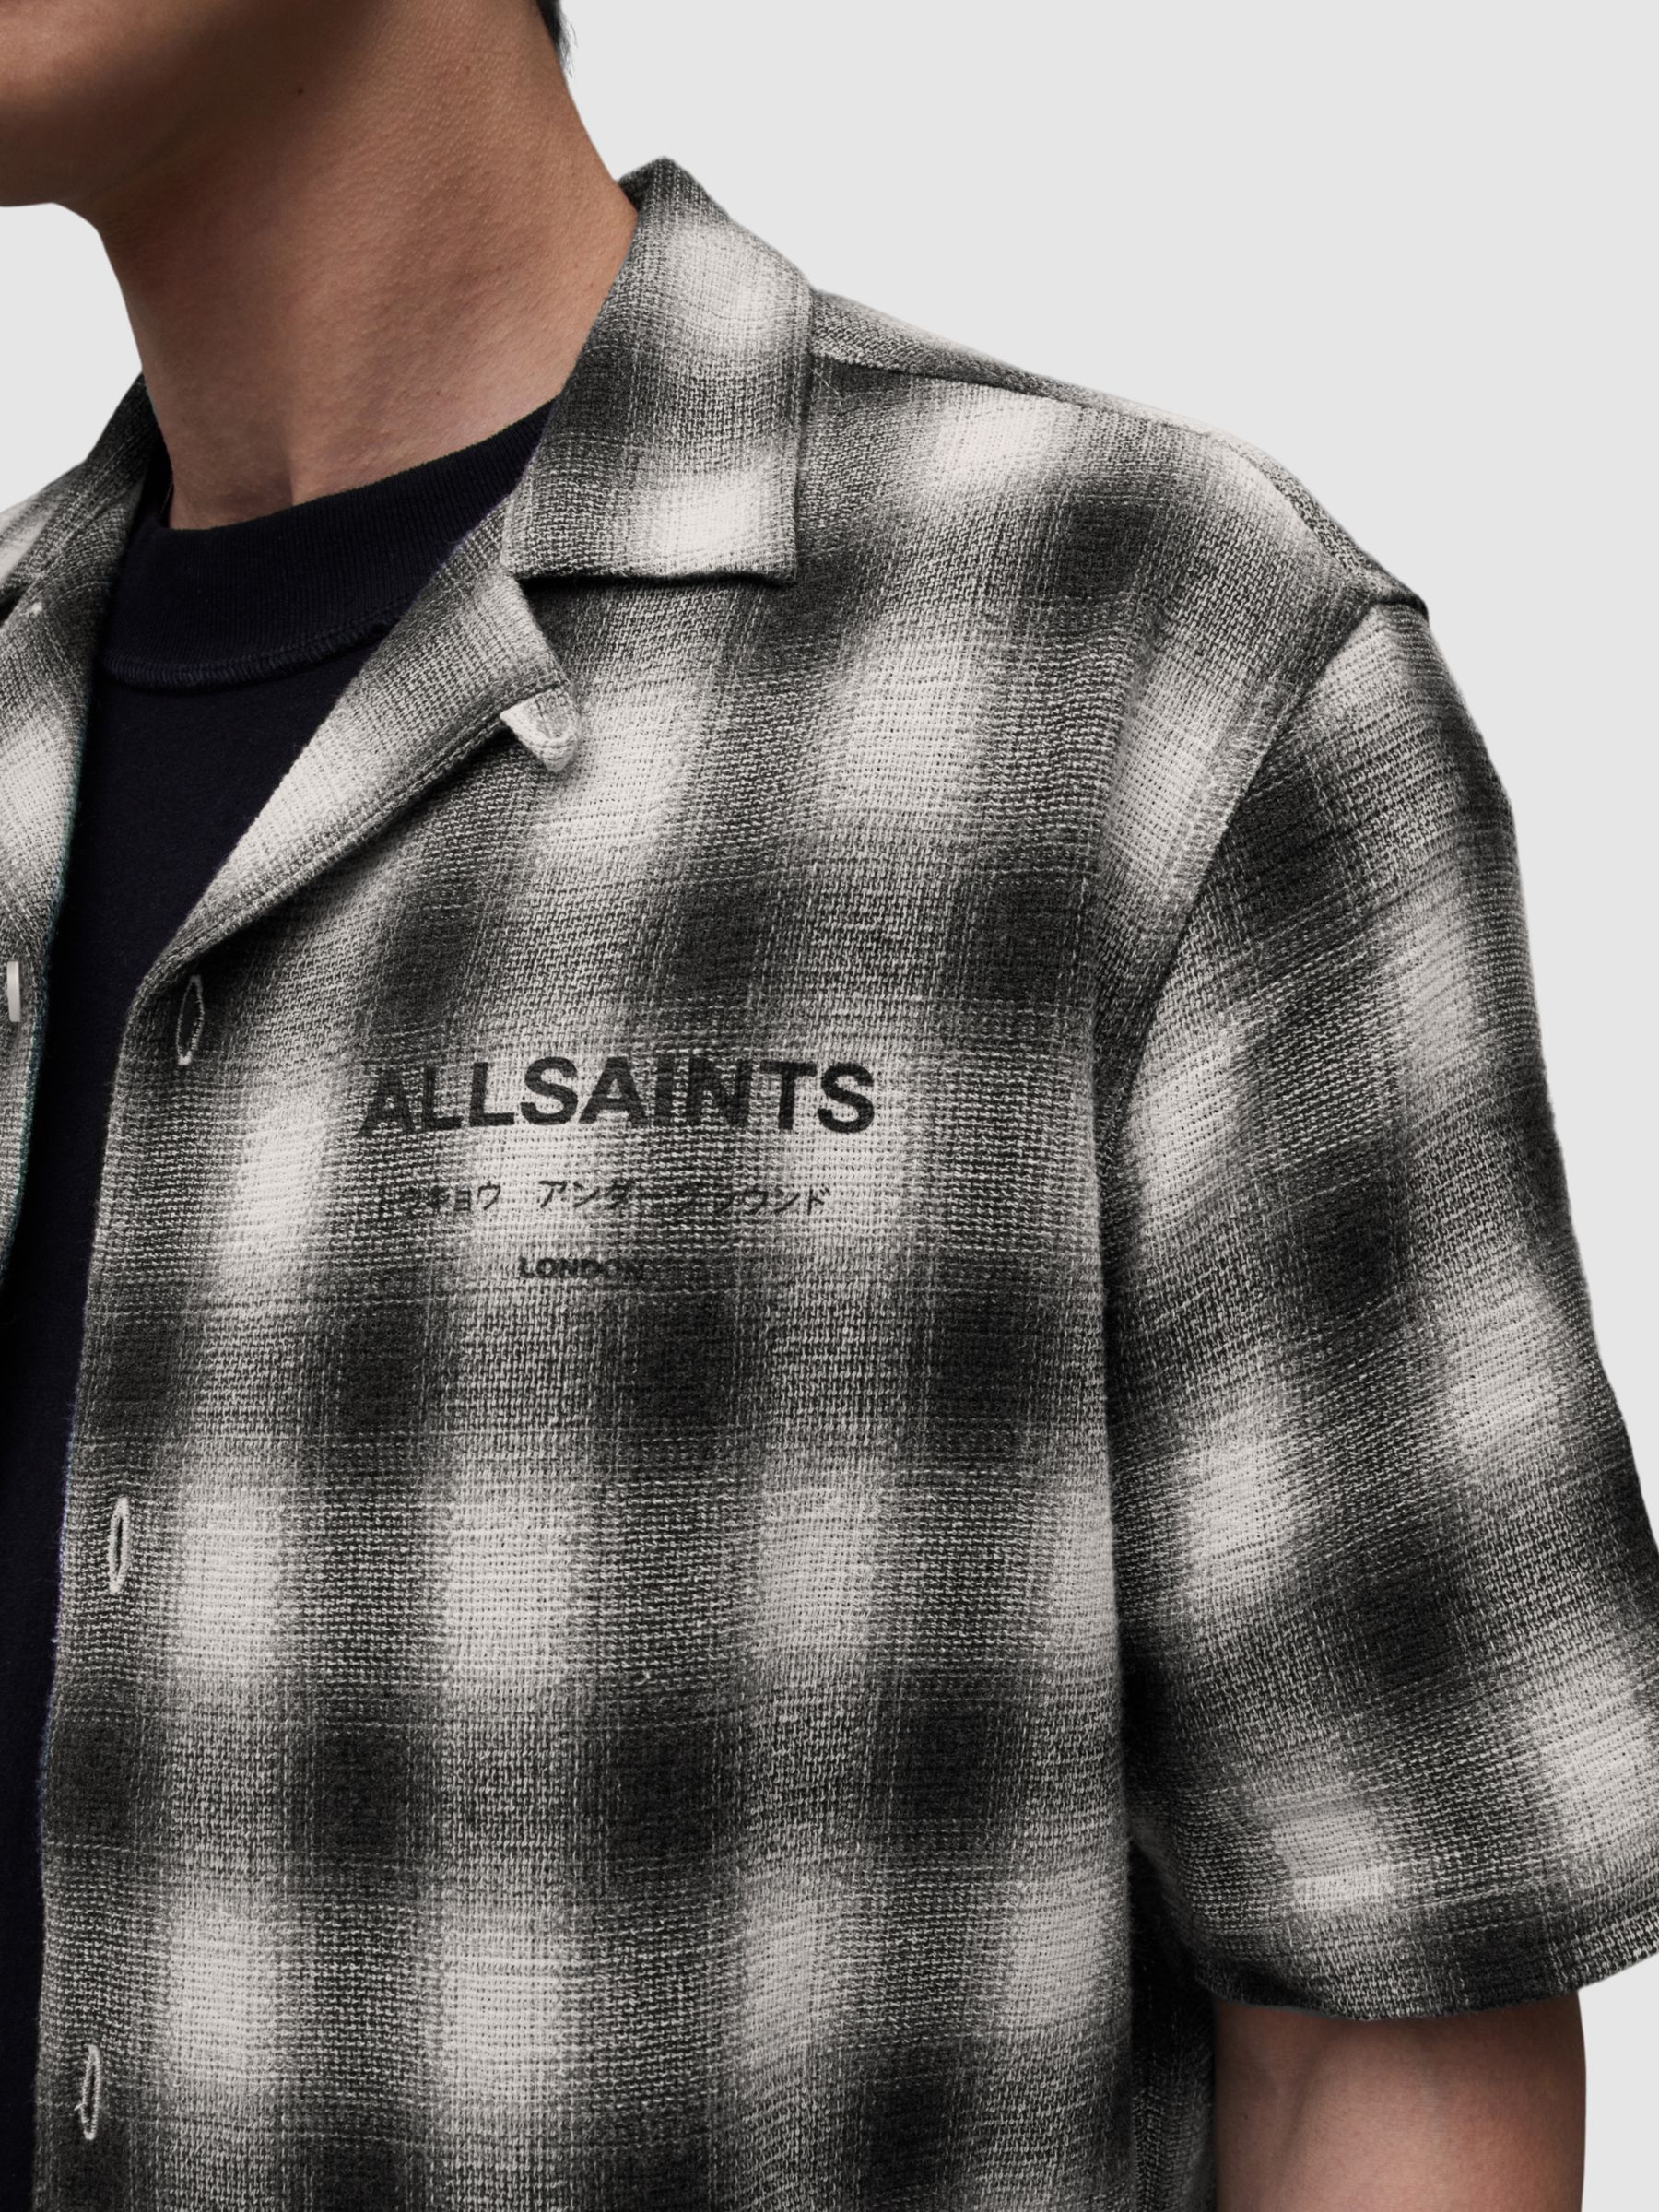 AllSaints Underground Check Shirt, White/Black, L